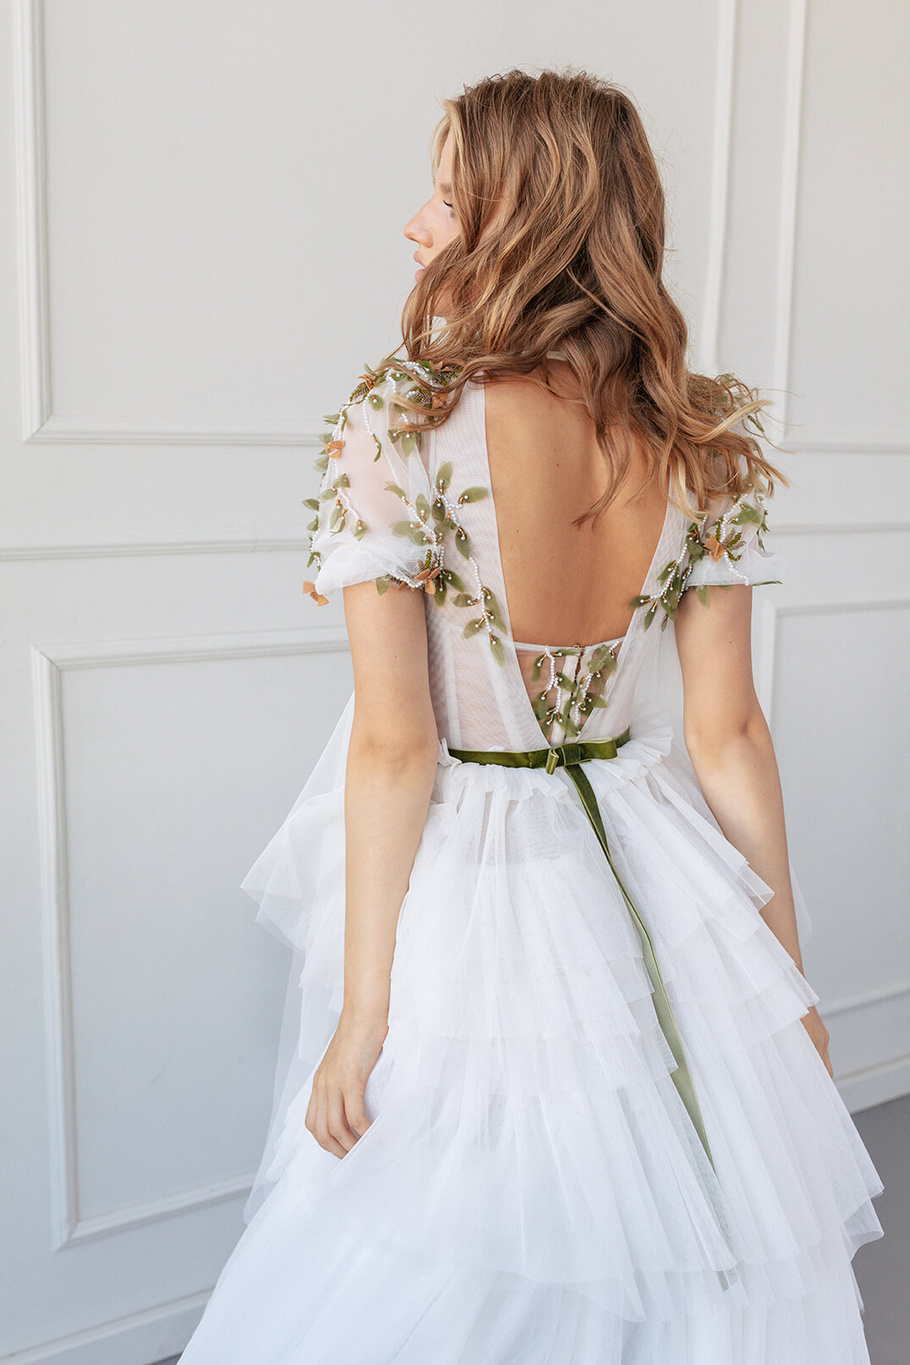 Купить свадебное платье «Гвен» Анже Этуаль из коллекции 2020 года в салоне «Мэри Трюфель»